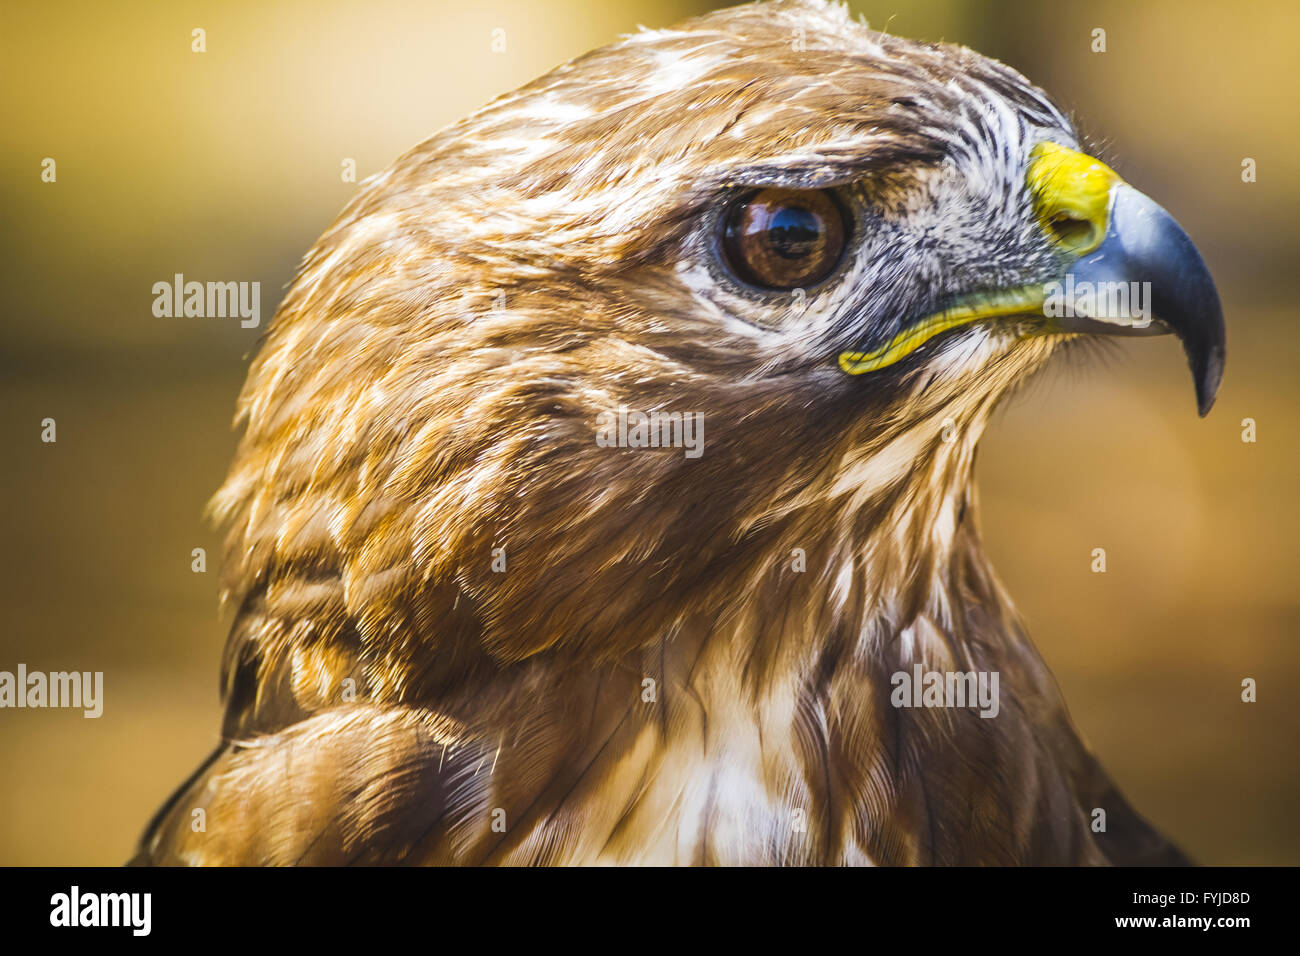 Adler, tagaktive Raubvogel mit schönen Gefieder und gelben Schnabel Stockfoto